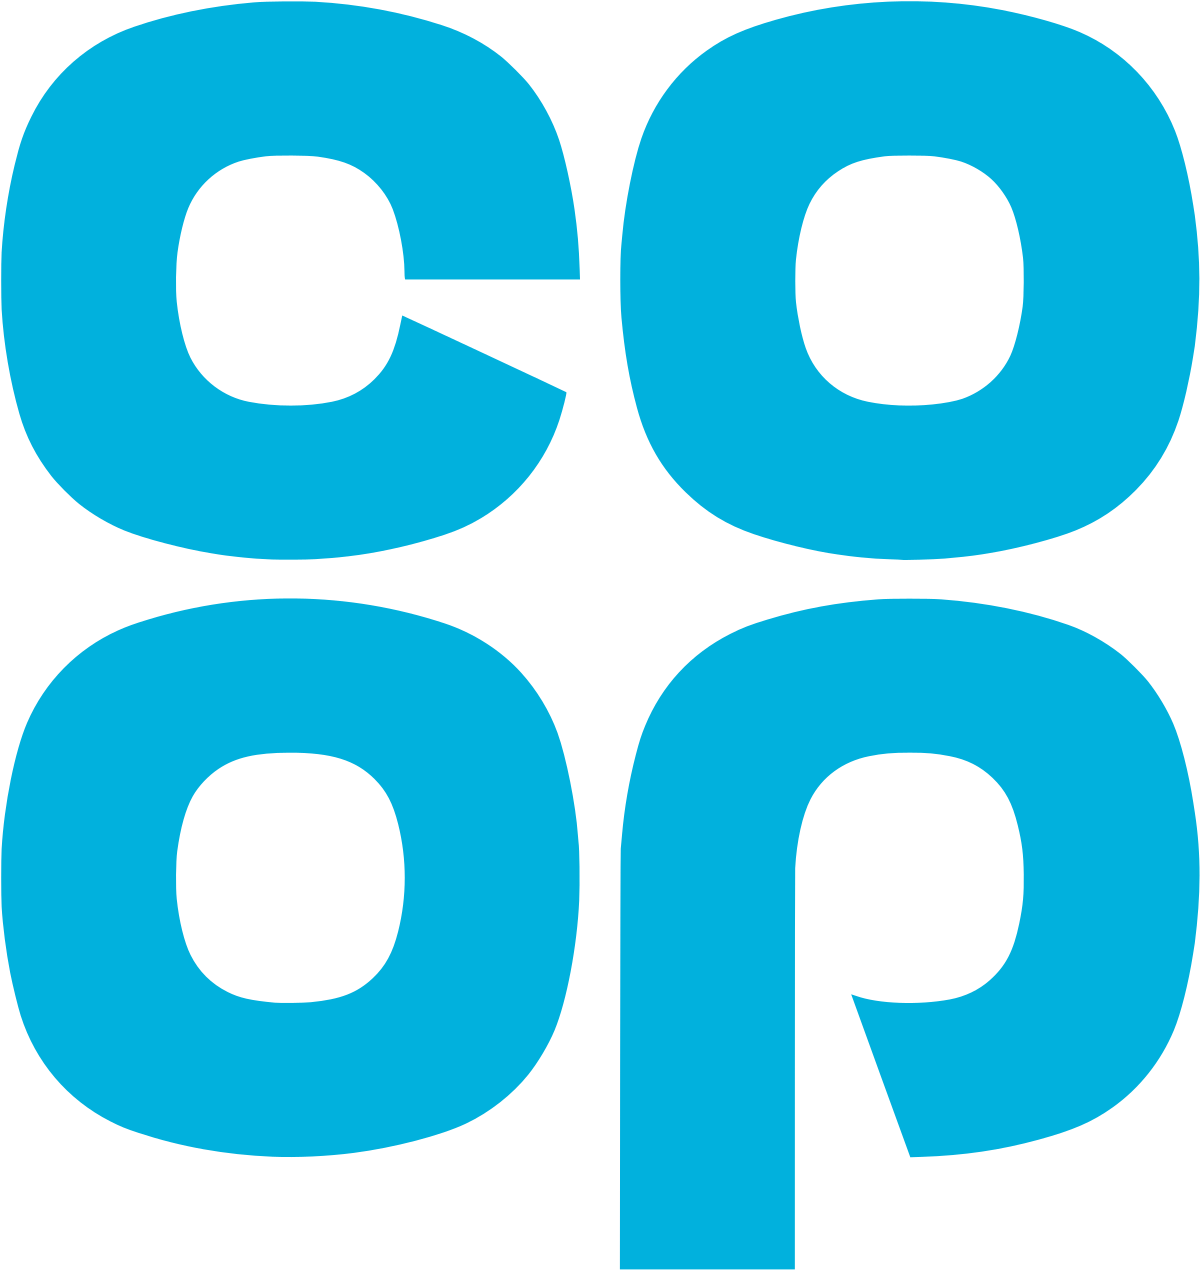 Co-op-logo